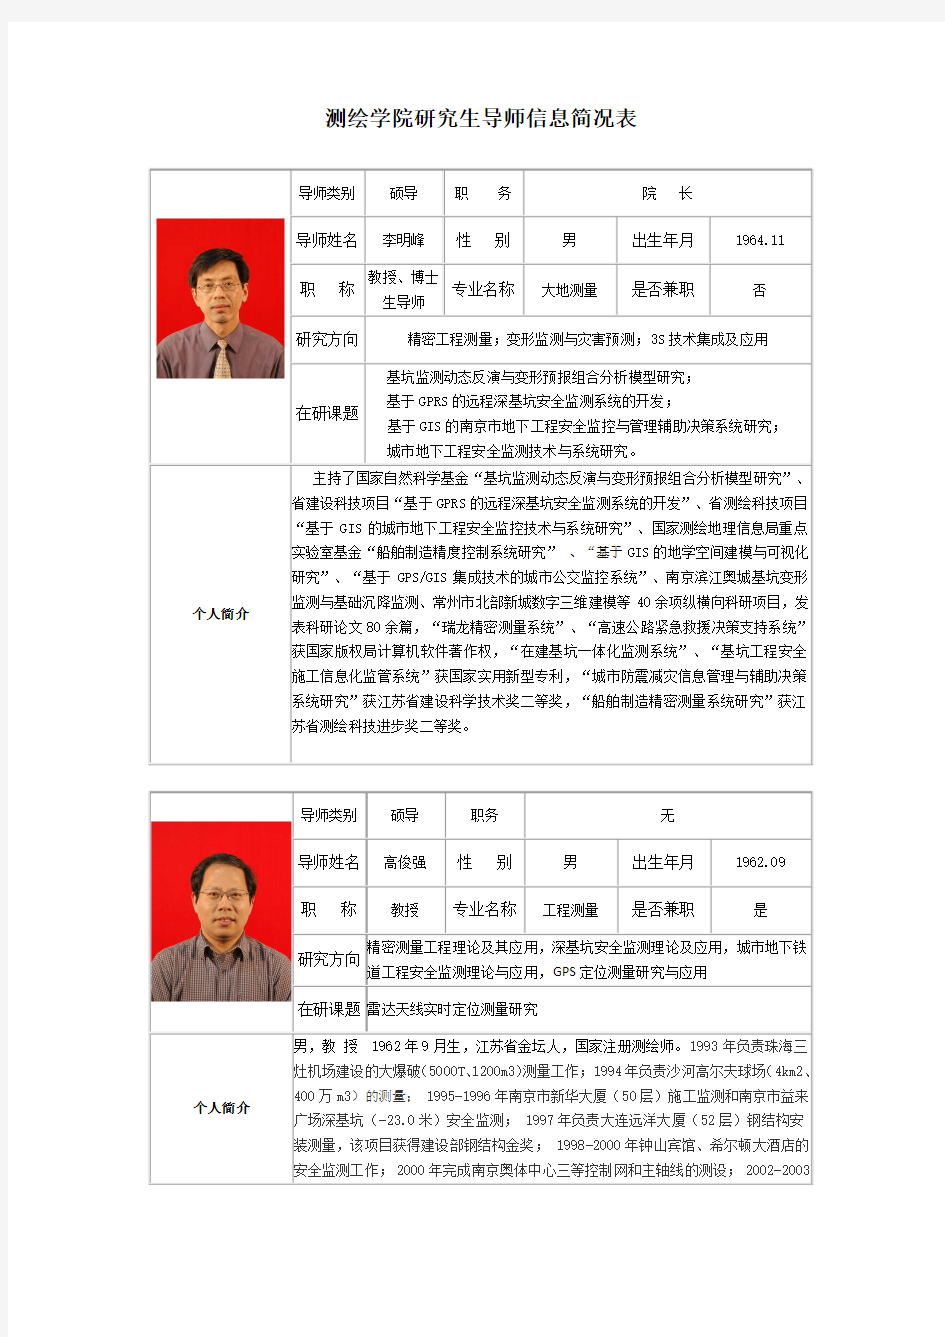 测绘学院研究生导师信息简况表-南京工业大学研究生院